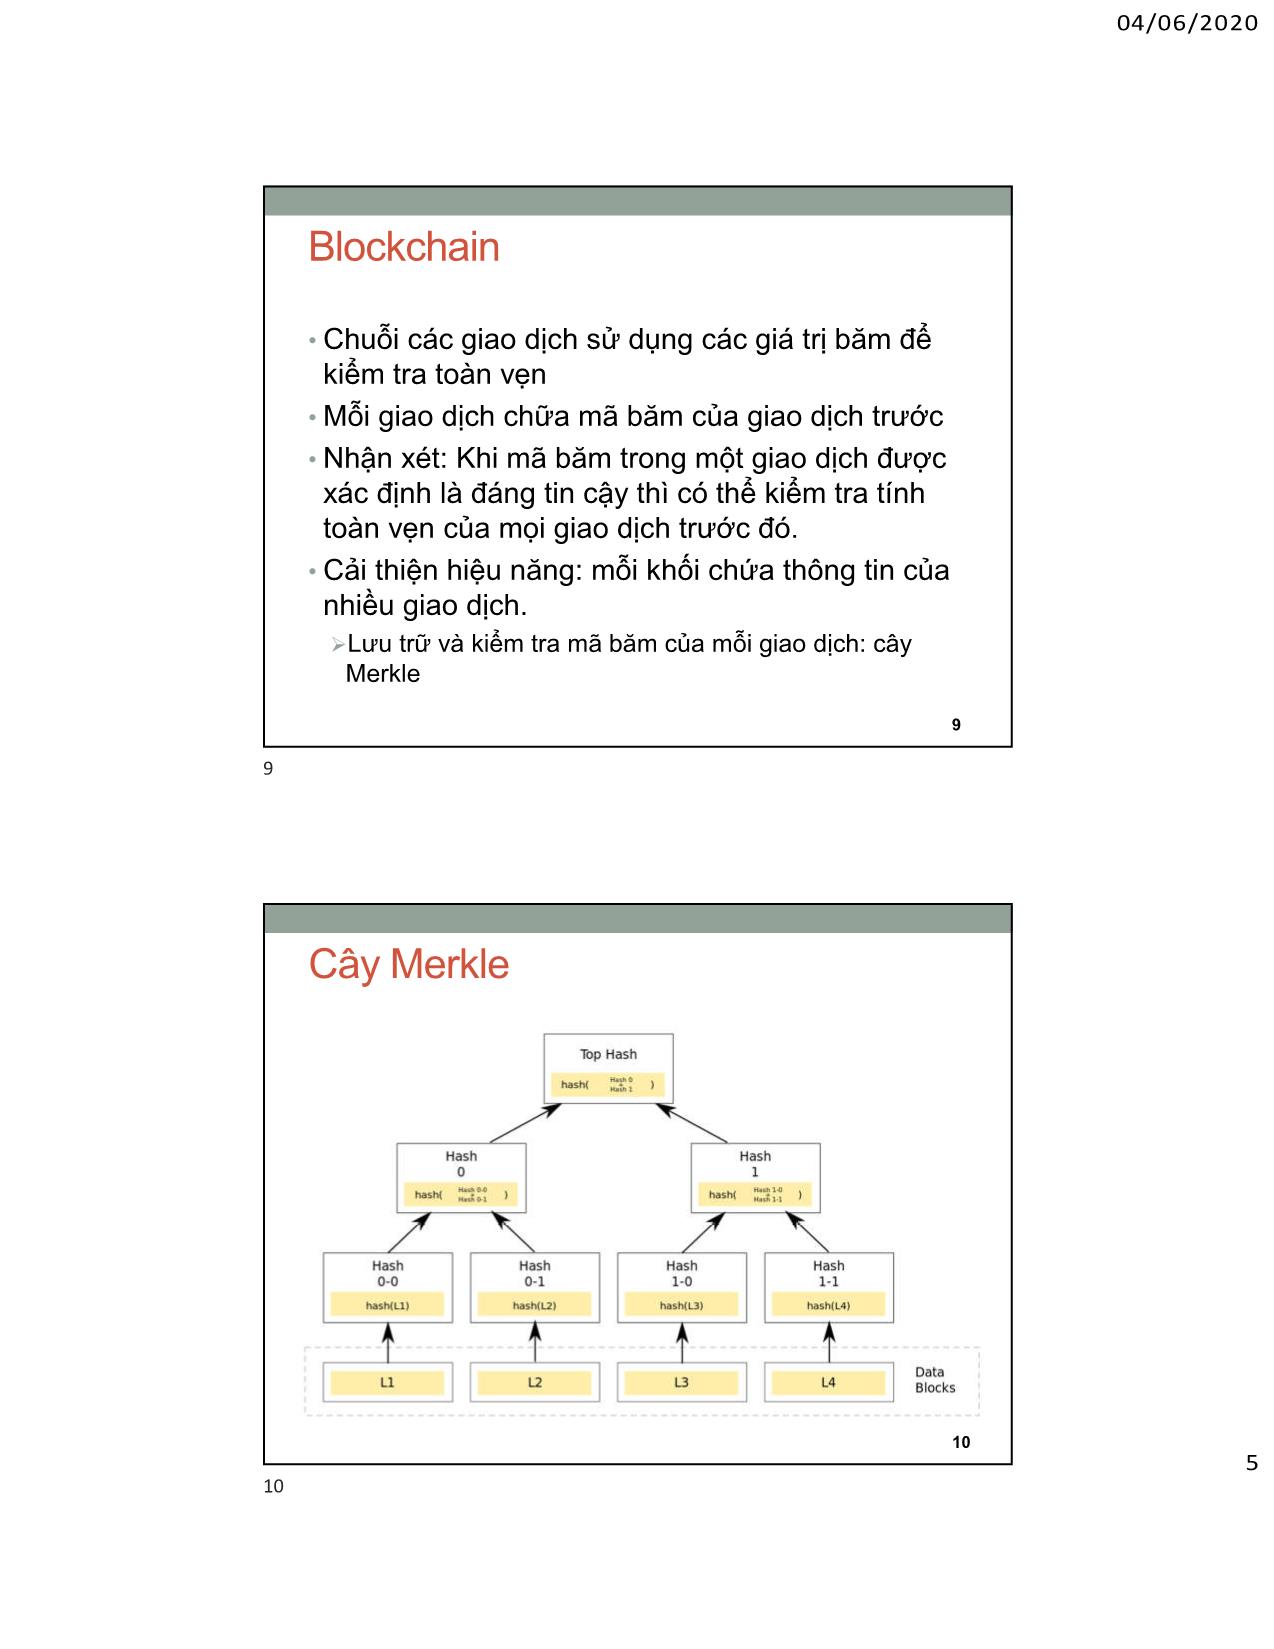 Bài giảng An toàn an ninh thông tin - Chương 9: Blockchain - Bùi Trọng Tùng trang 5